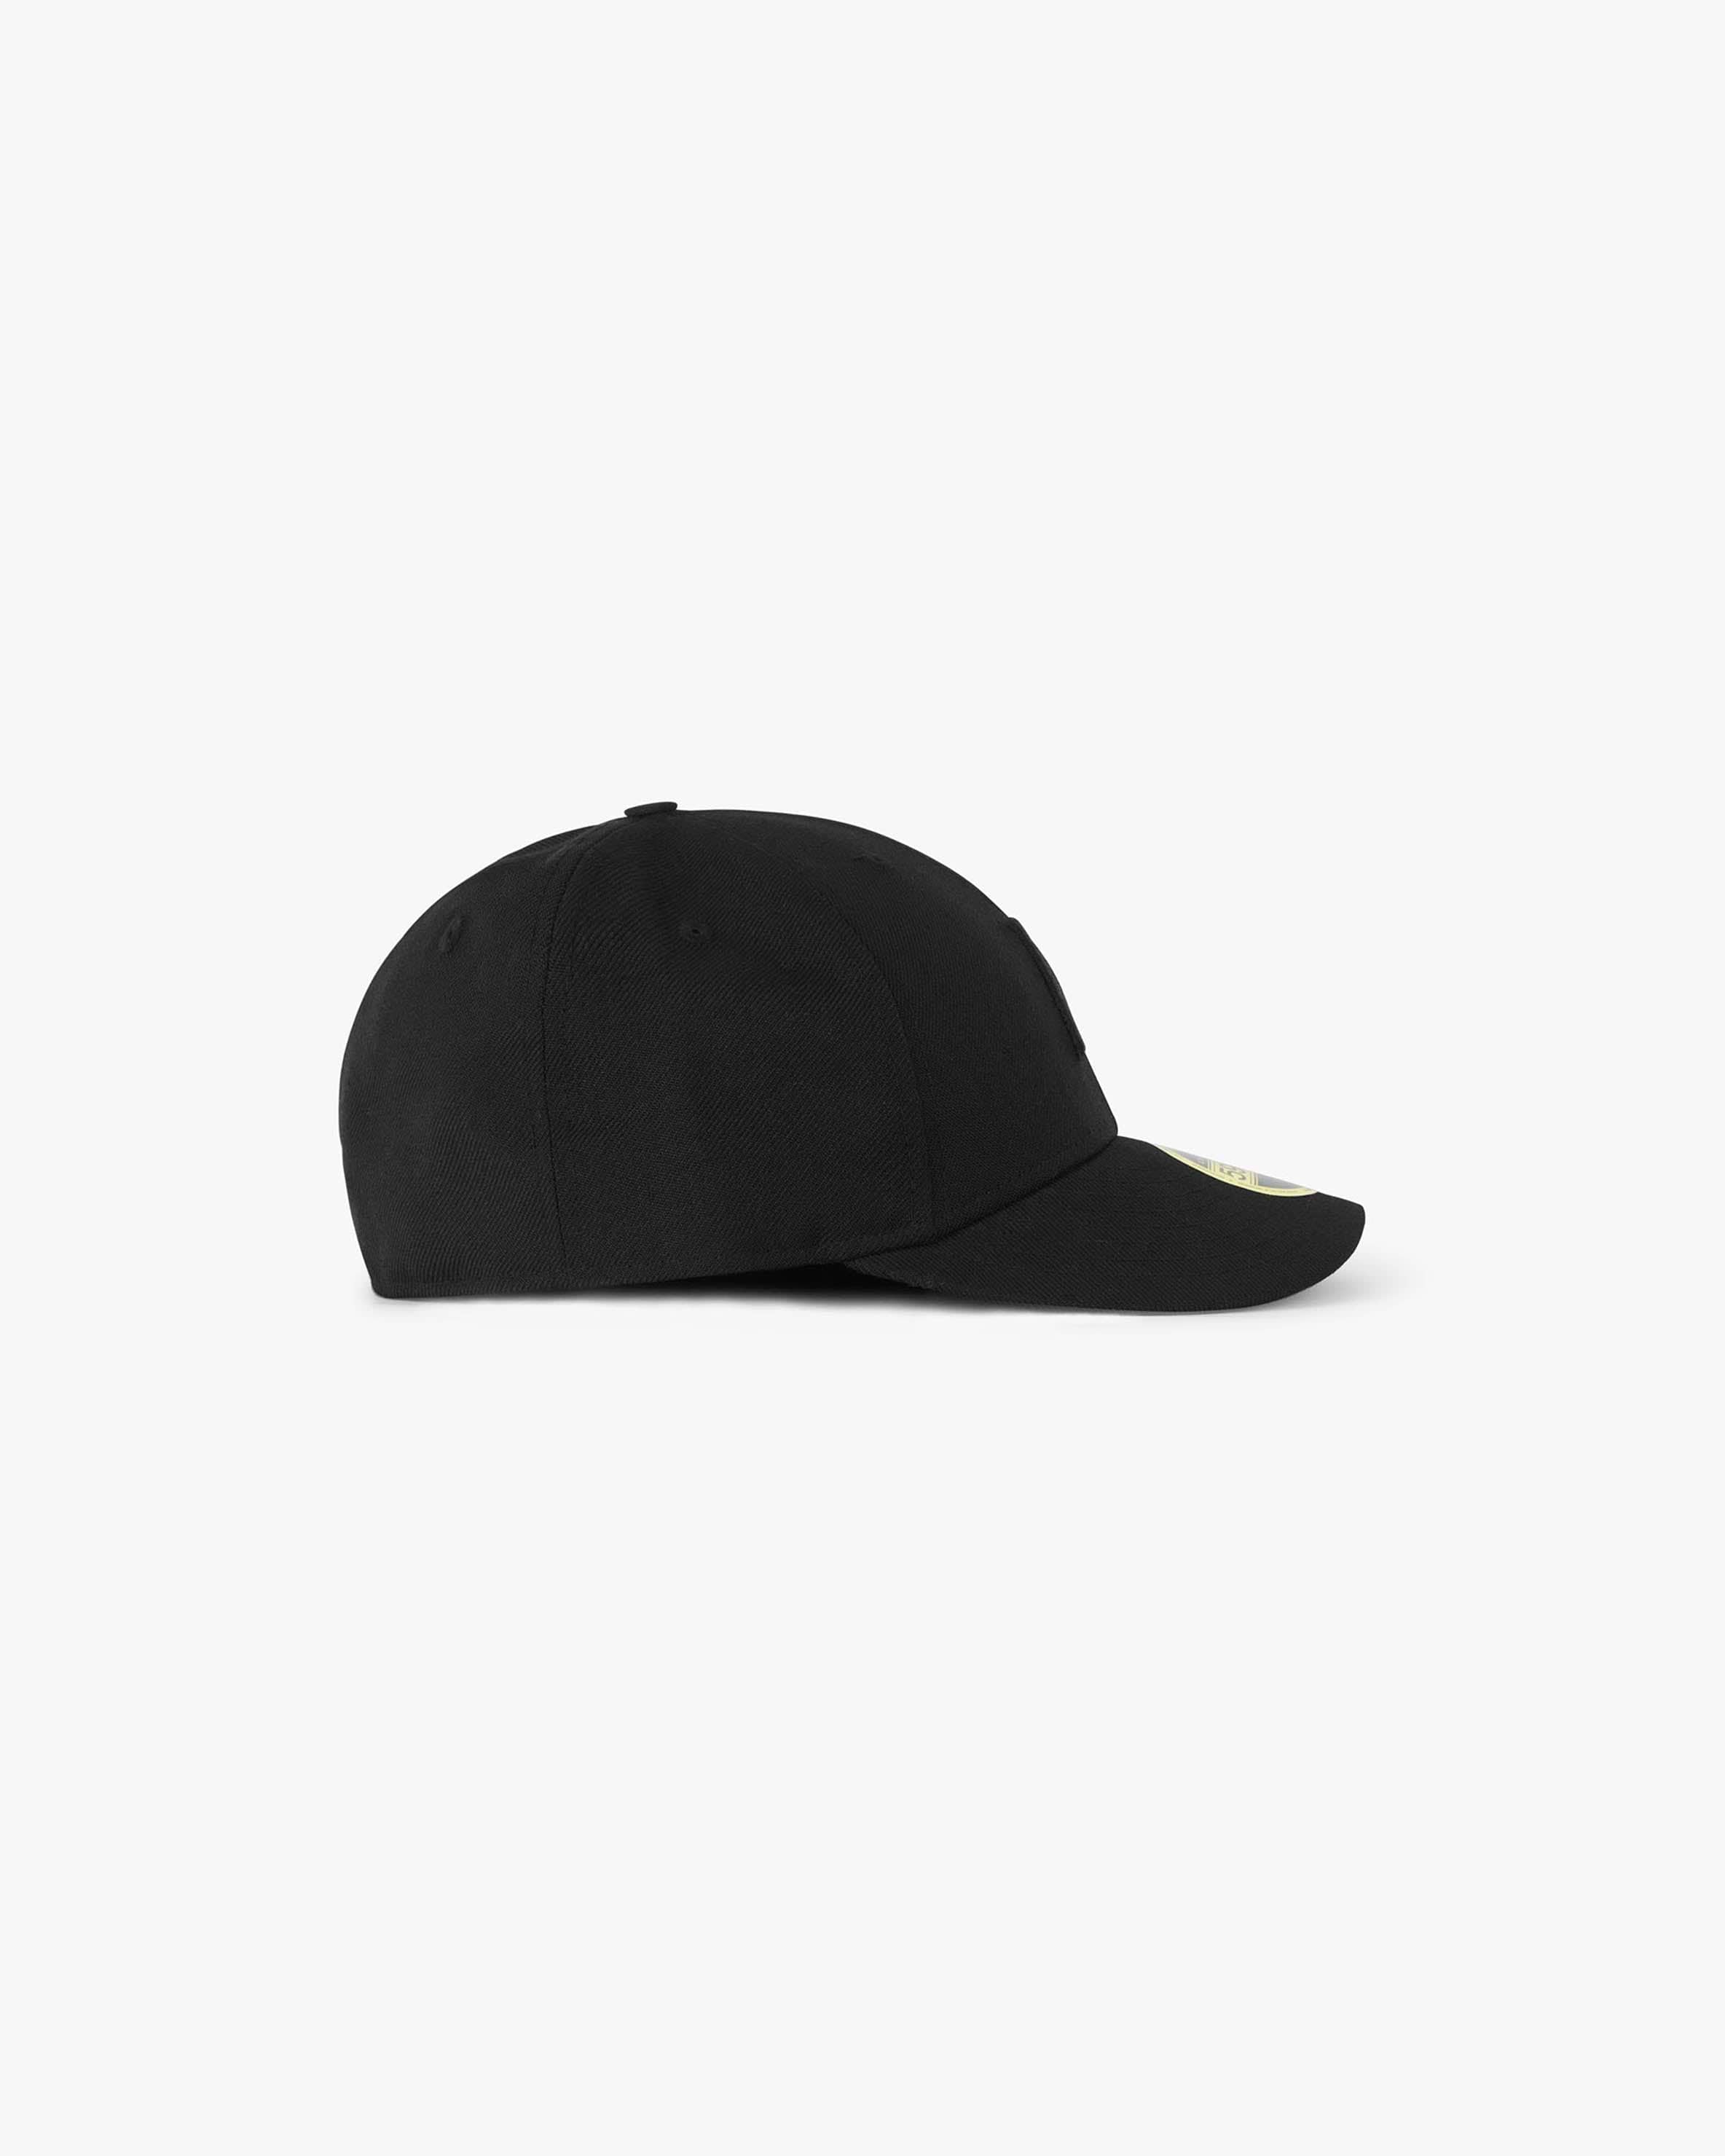 Initial New Era 59Fifty Cap | All Black | REPRESENT CLO